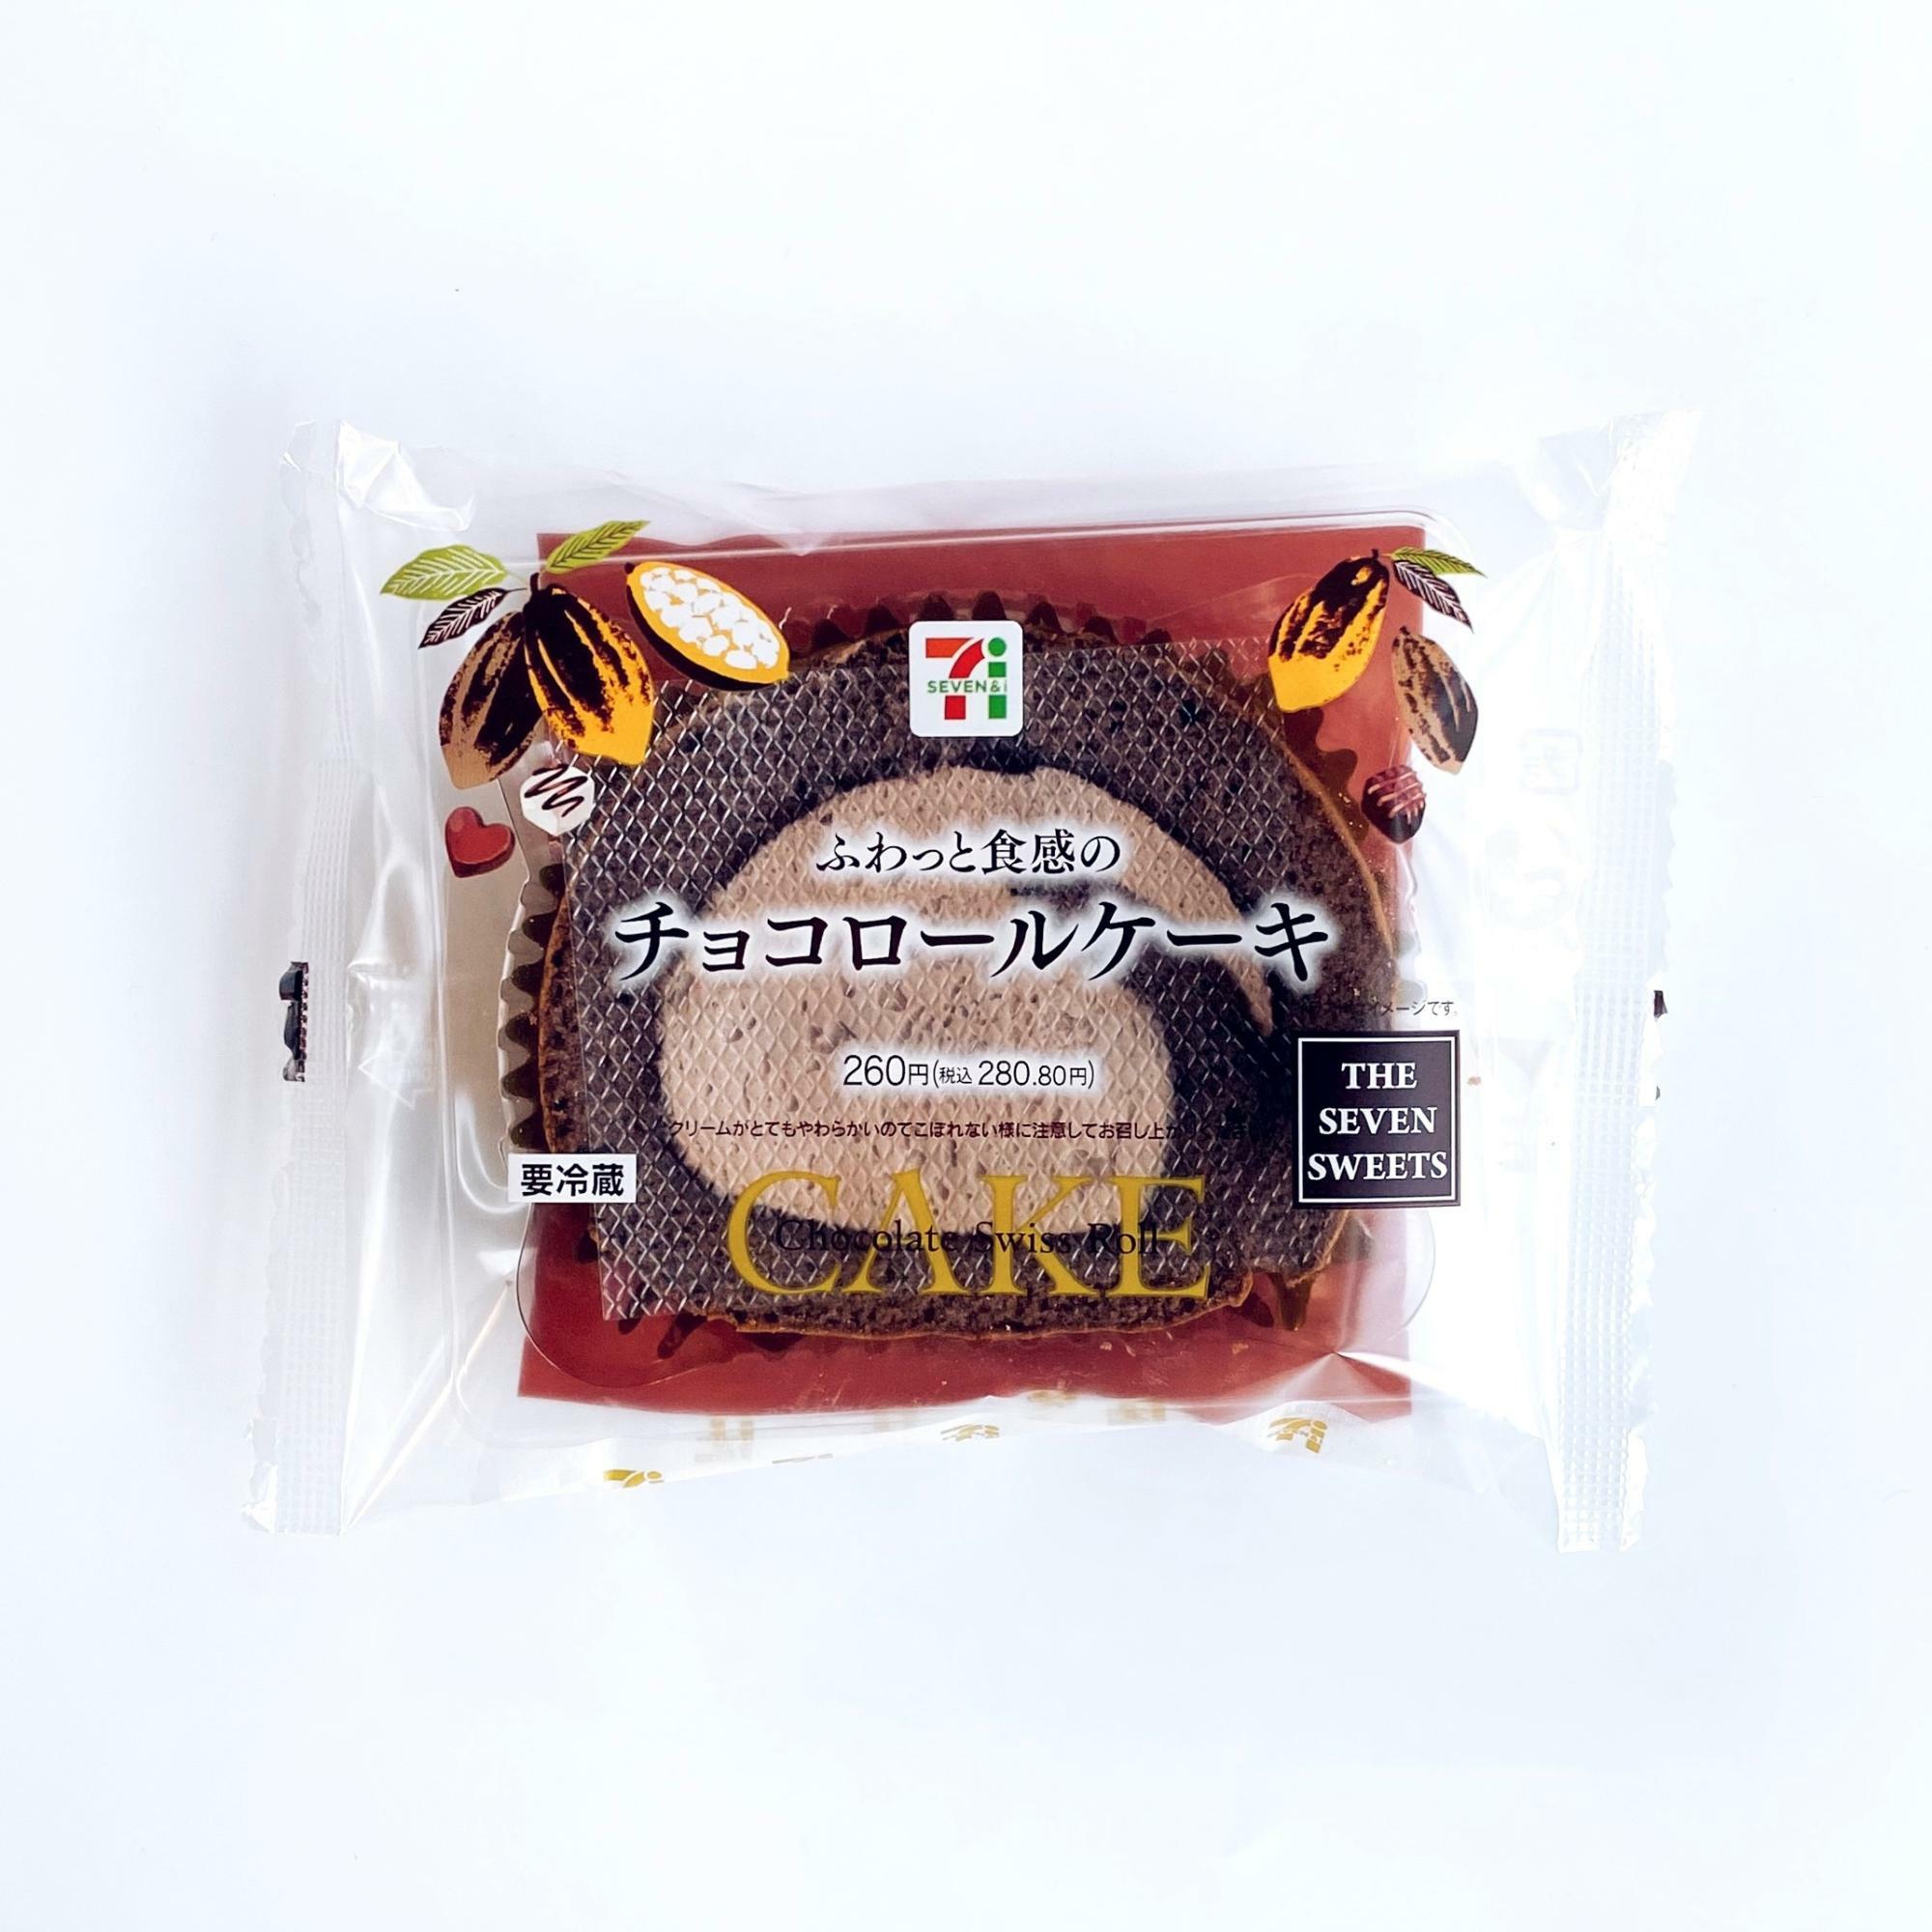 「ふわっと食感のチョコロールケーキ」¥280